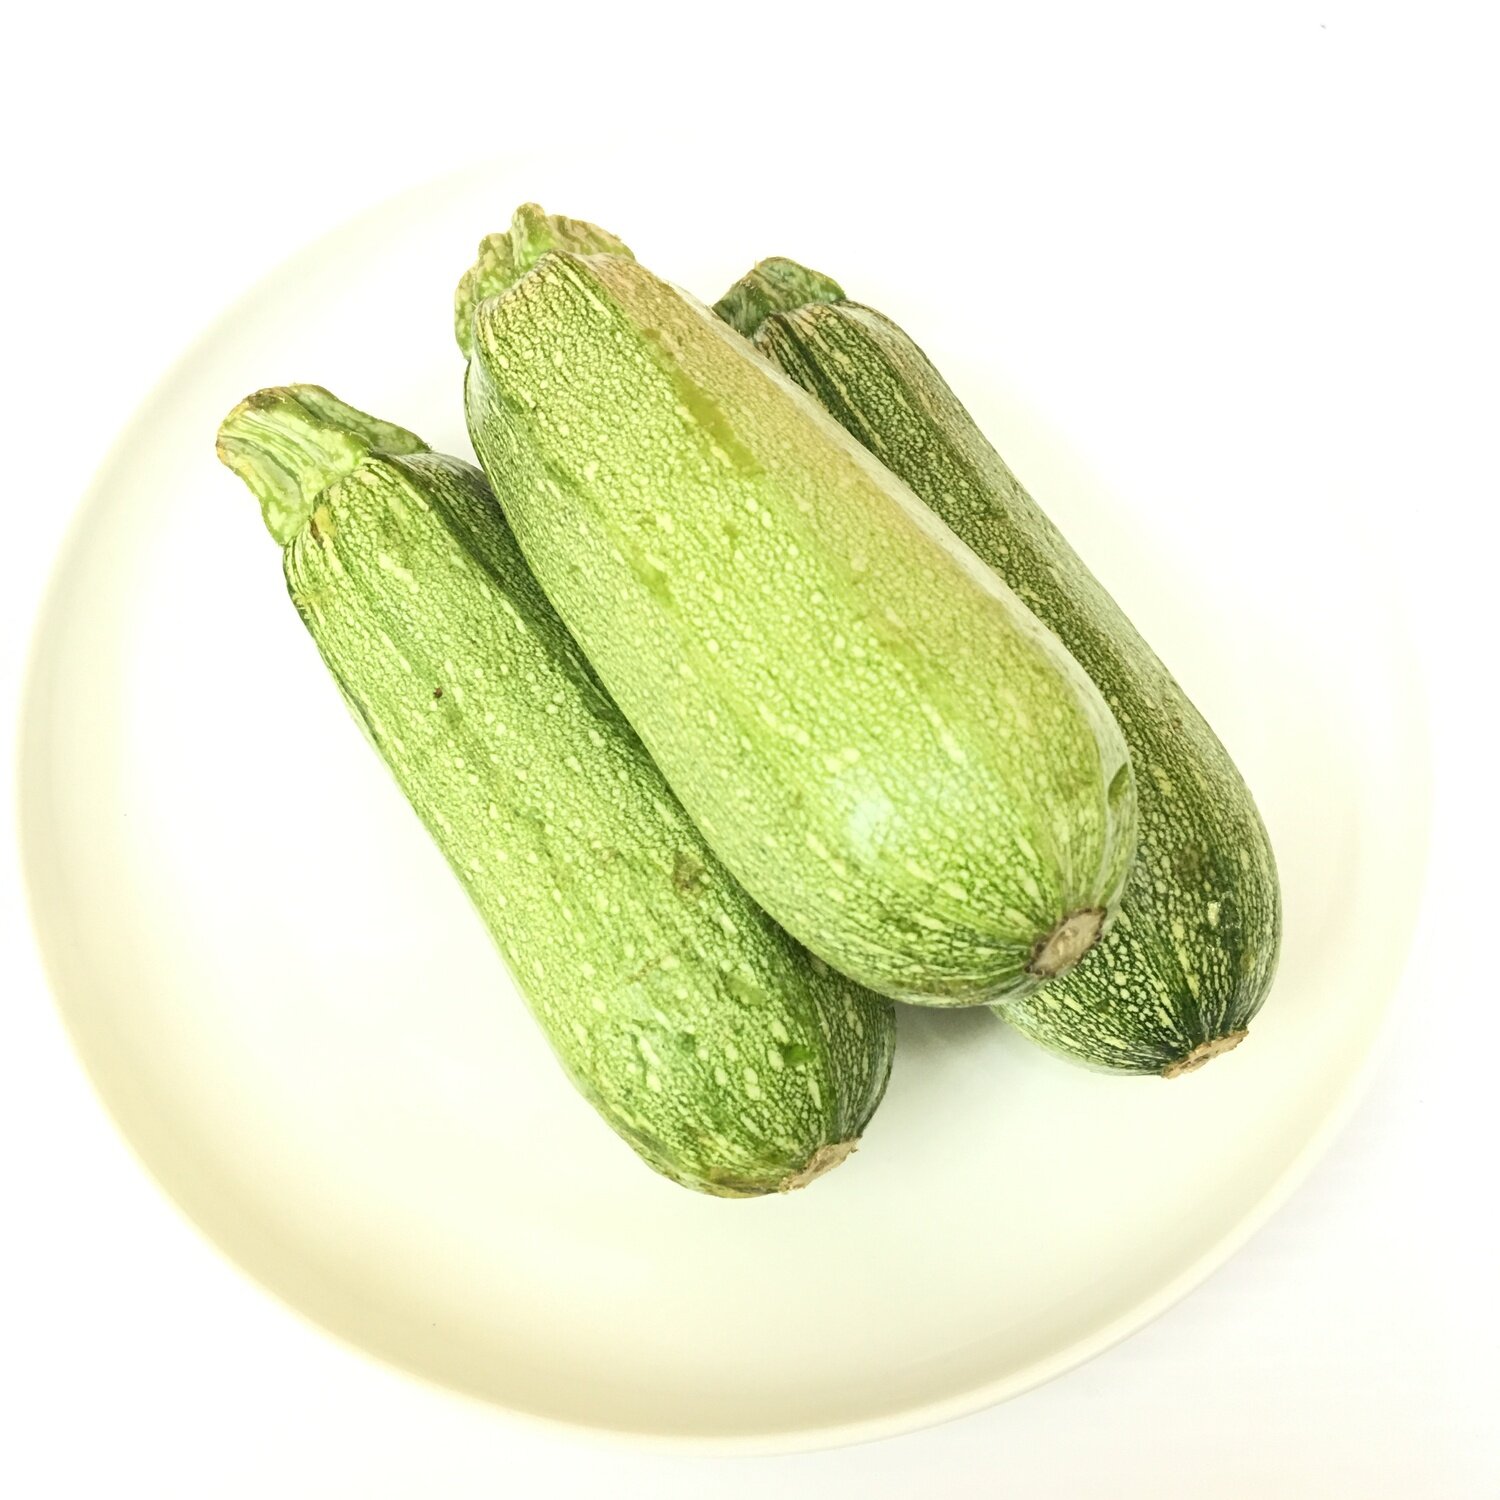 VEG【蔬菜】墨西哥丝瓜 ~约1.5lb